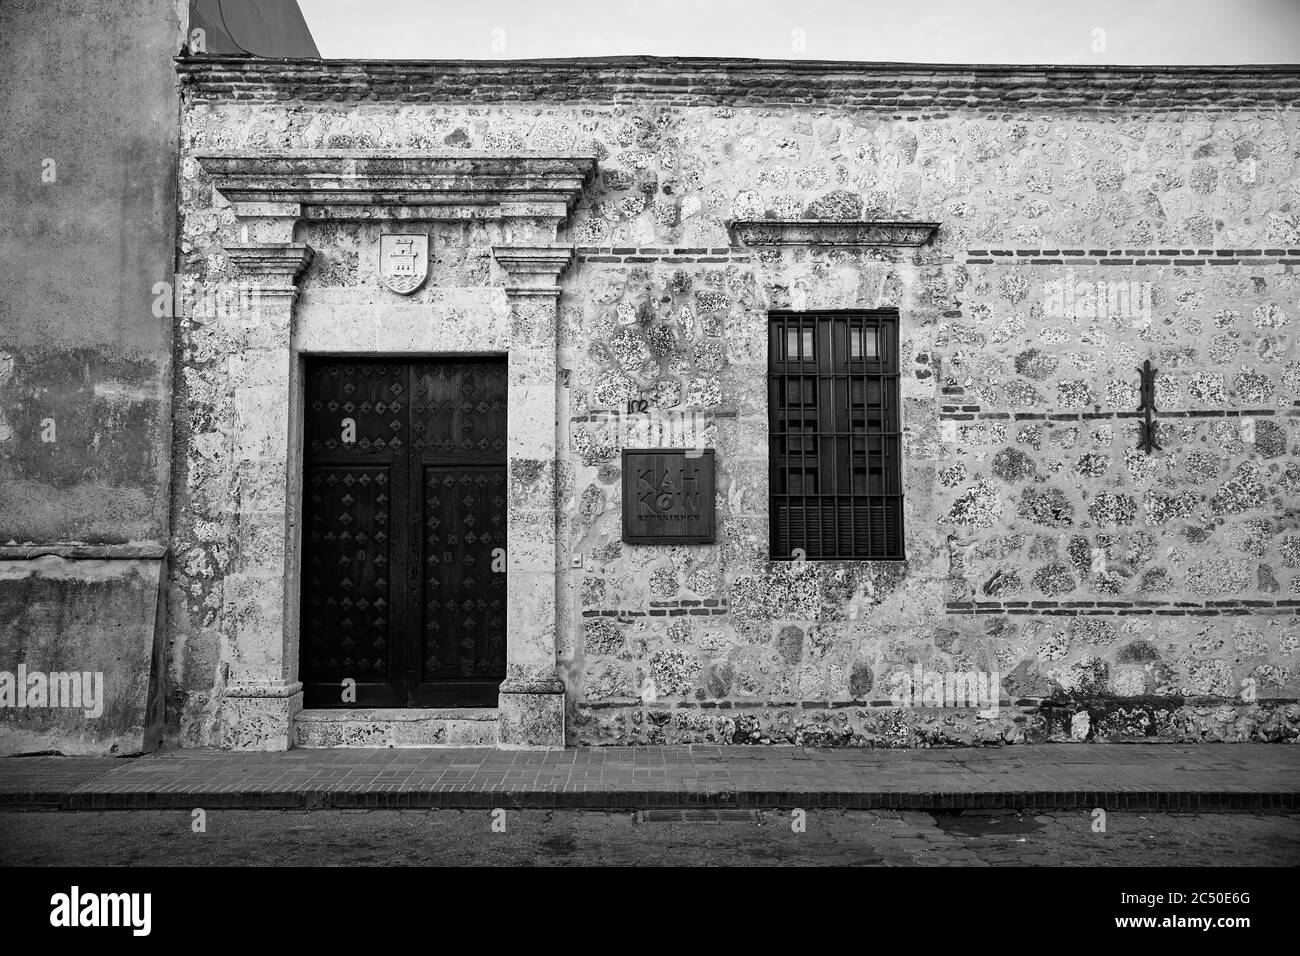 Détail de l'architecture coloniale. Style colonial typique à Saint-Domingue, République dominicaine. 27.12.2016. Banque D'Images